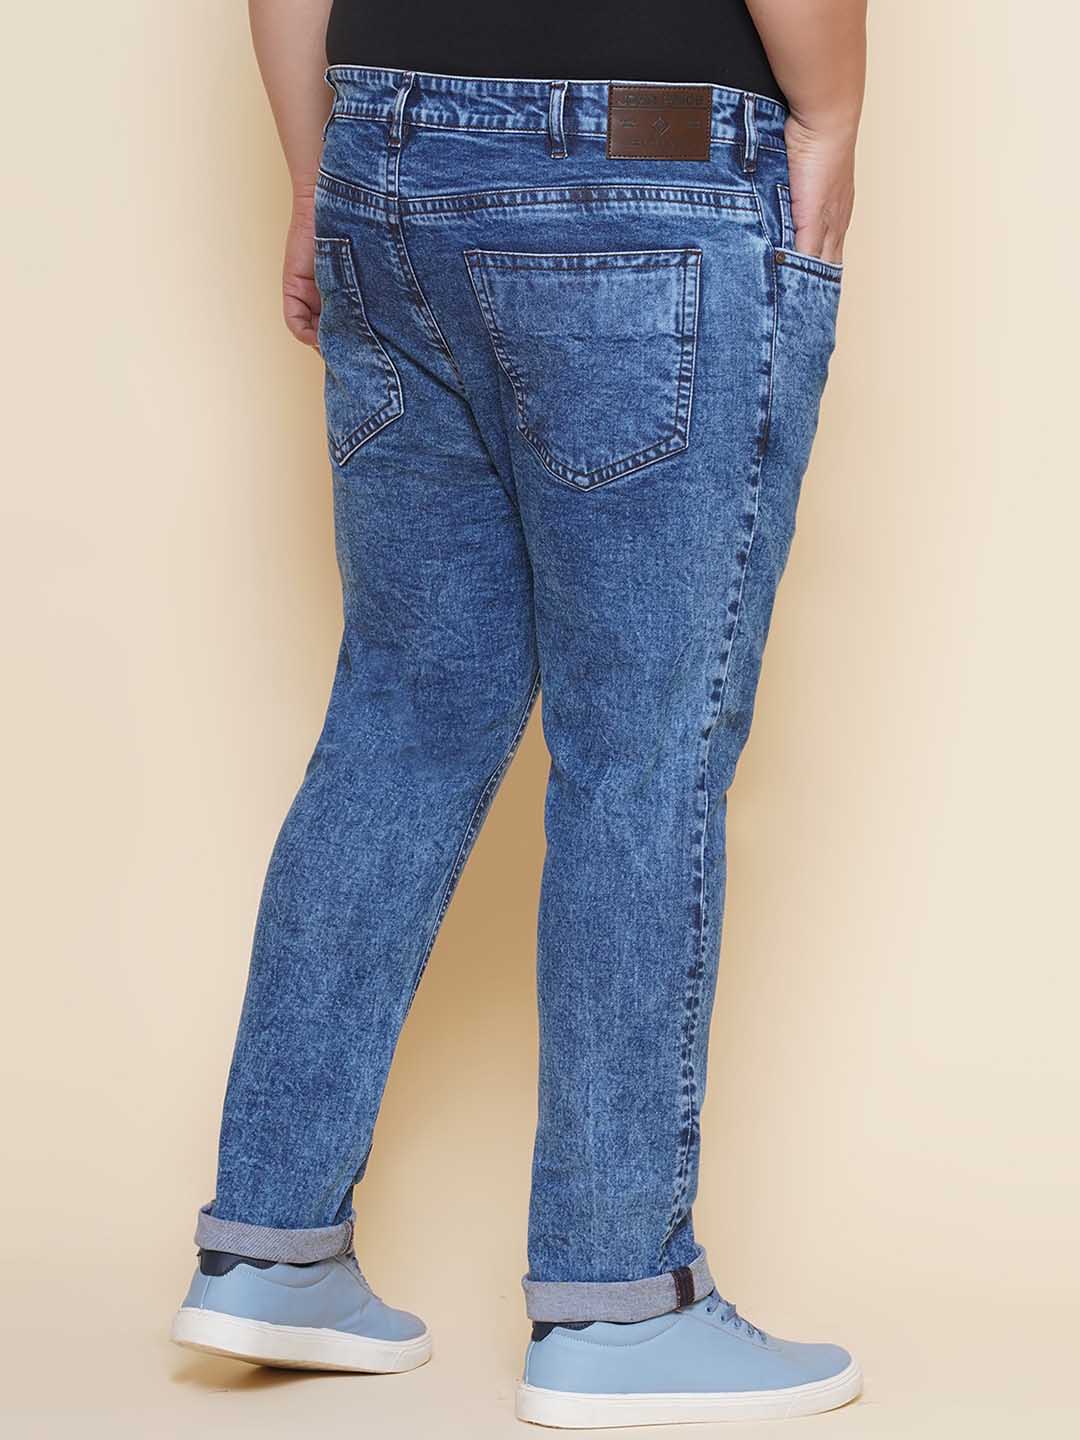 bottomwear/jeans/EJPJ25142/ejpj25142-5.jpg